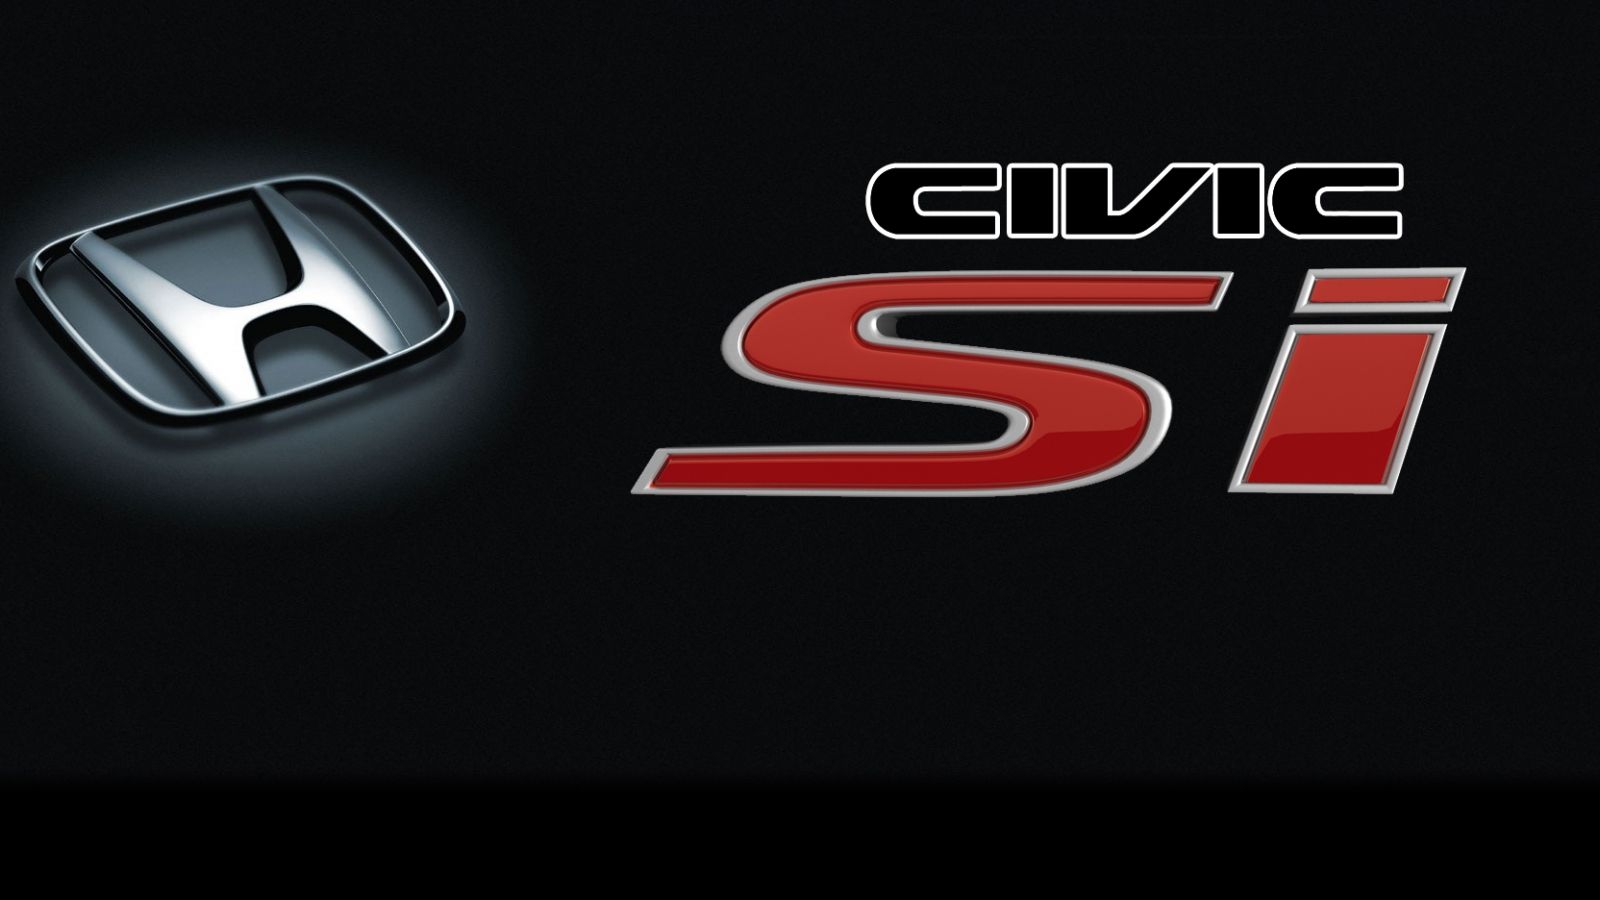 Honda Civic logo